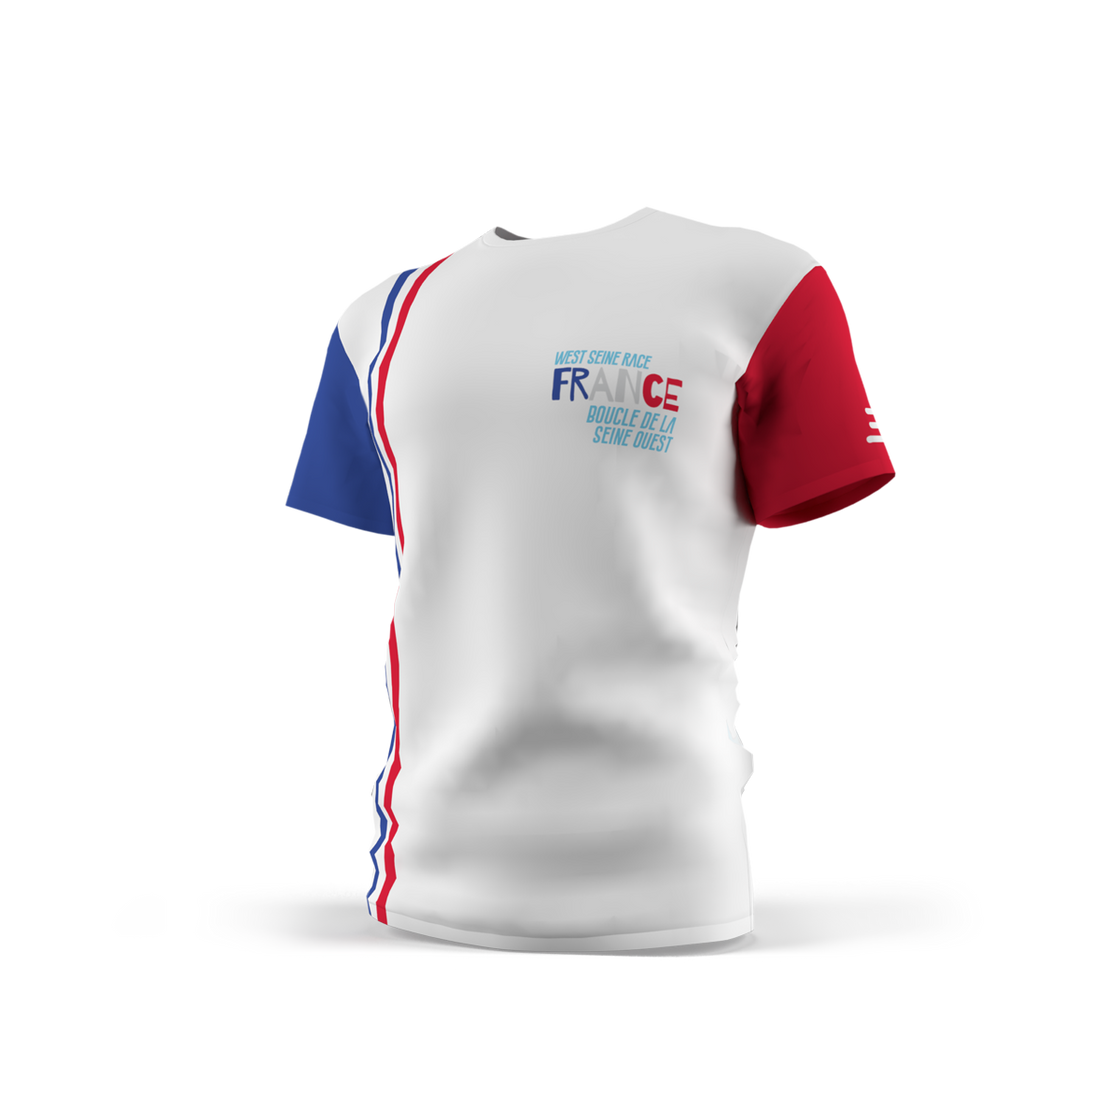 France - West Seine Race T-shirt